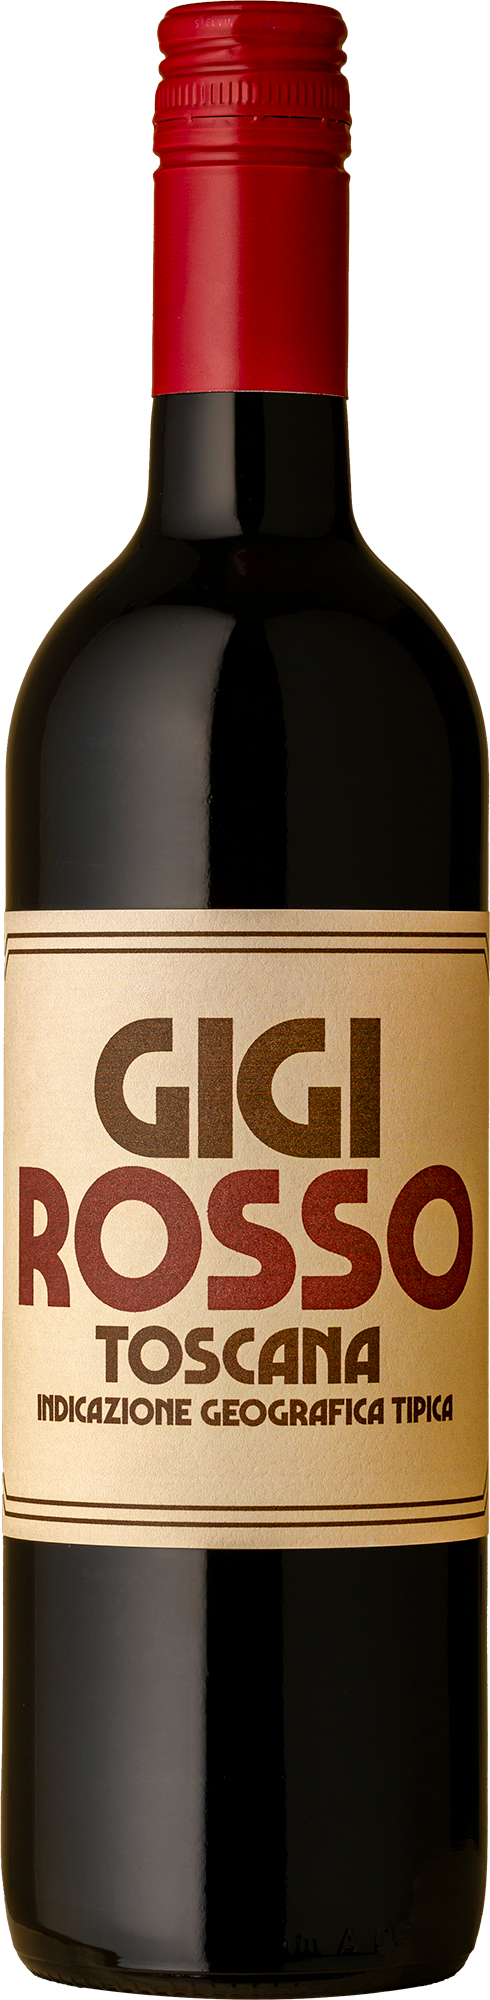 Fattori Parri - Gigi Rosso 2020 Red Wine